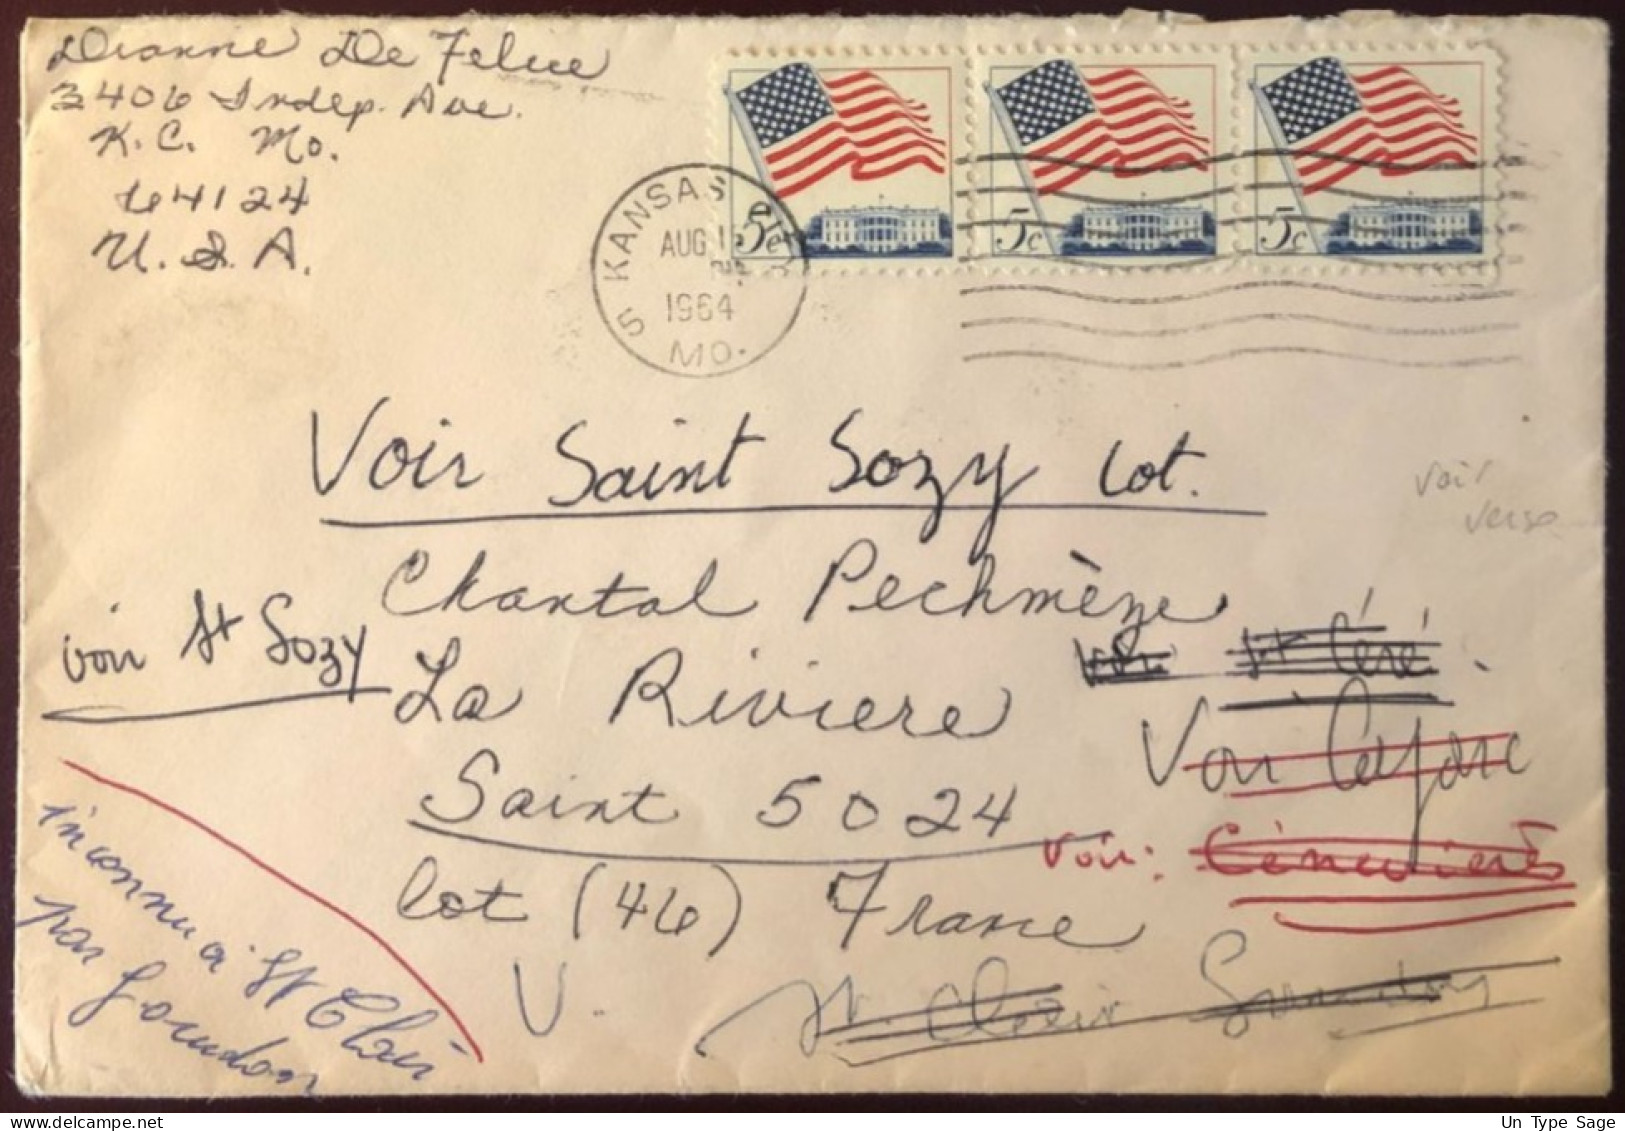 Etats-Unis, Divers Sur Enveloppe De Kansas City, MO 1964 - Voir Verso Divers Cachets - (B2723) - Storia Postale